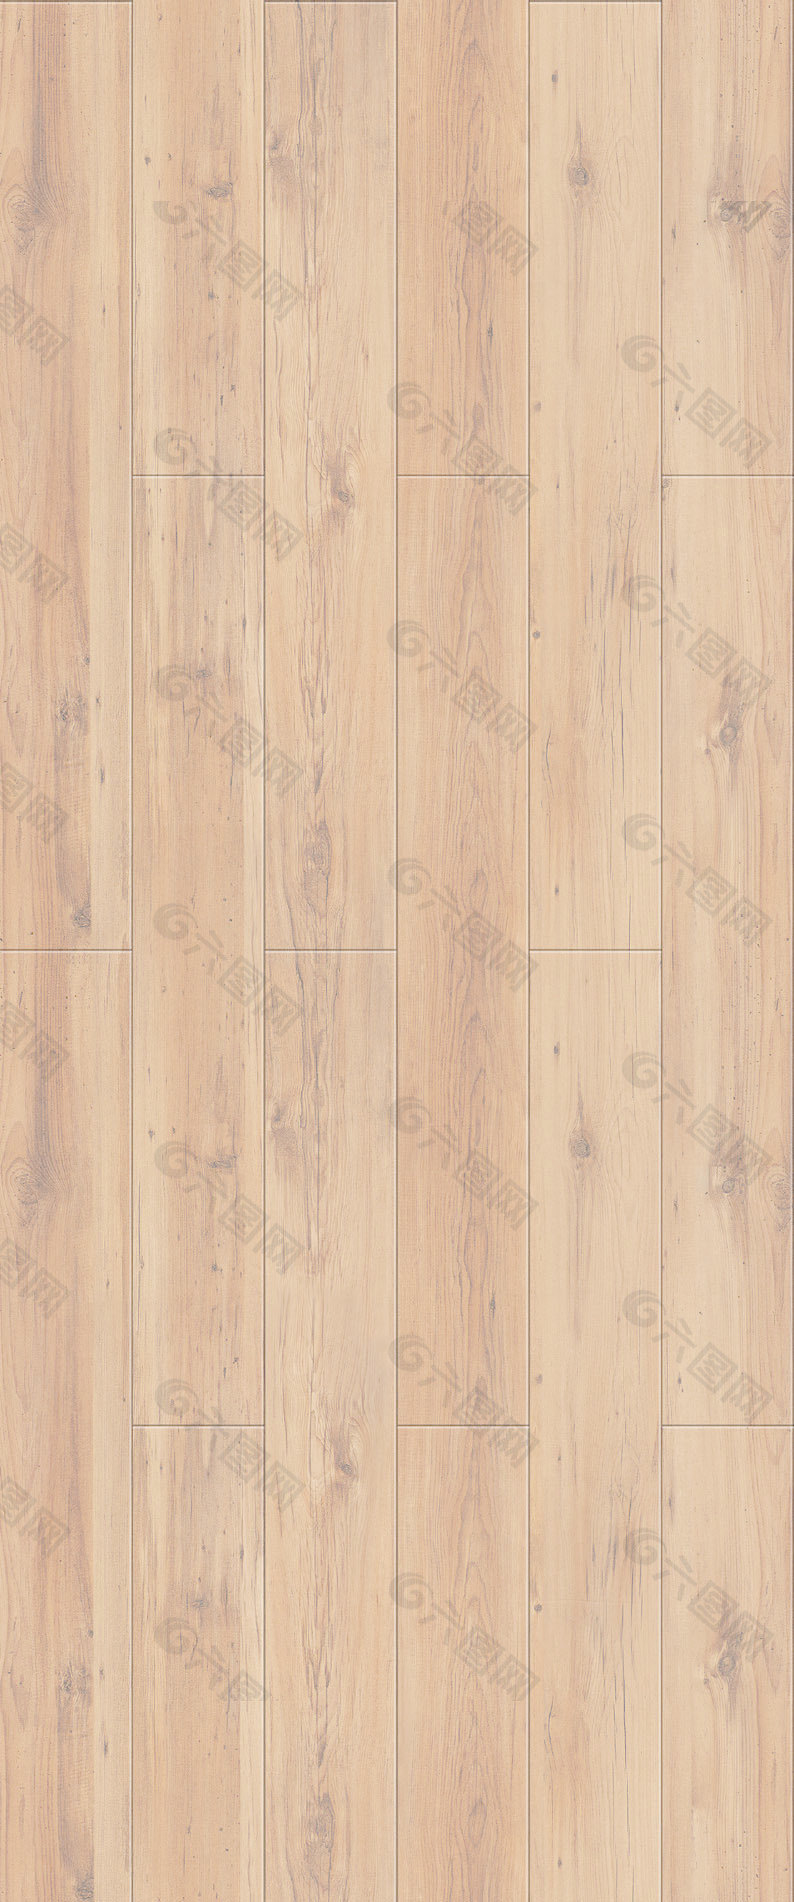 木地板贴图地板设计素材 61